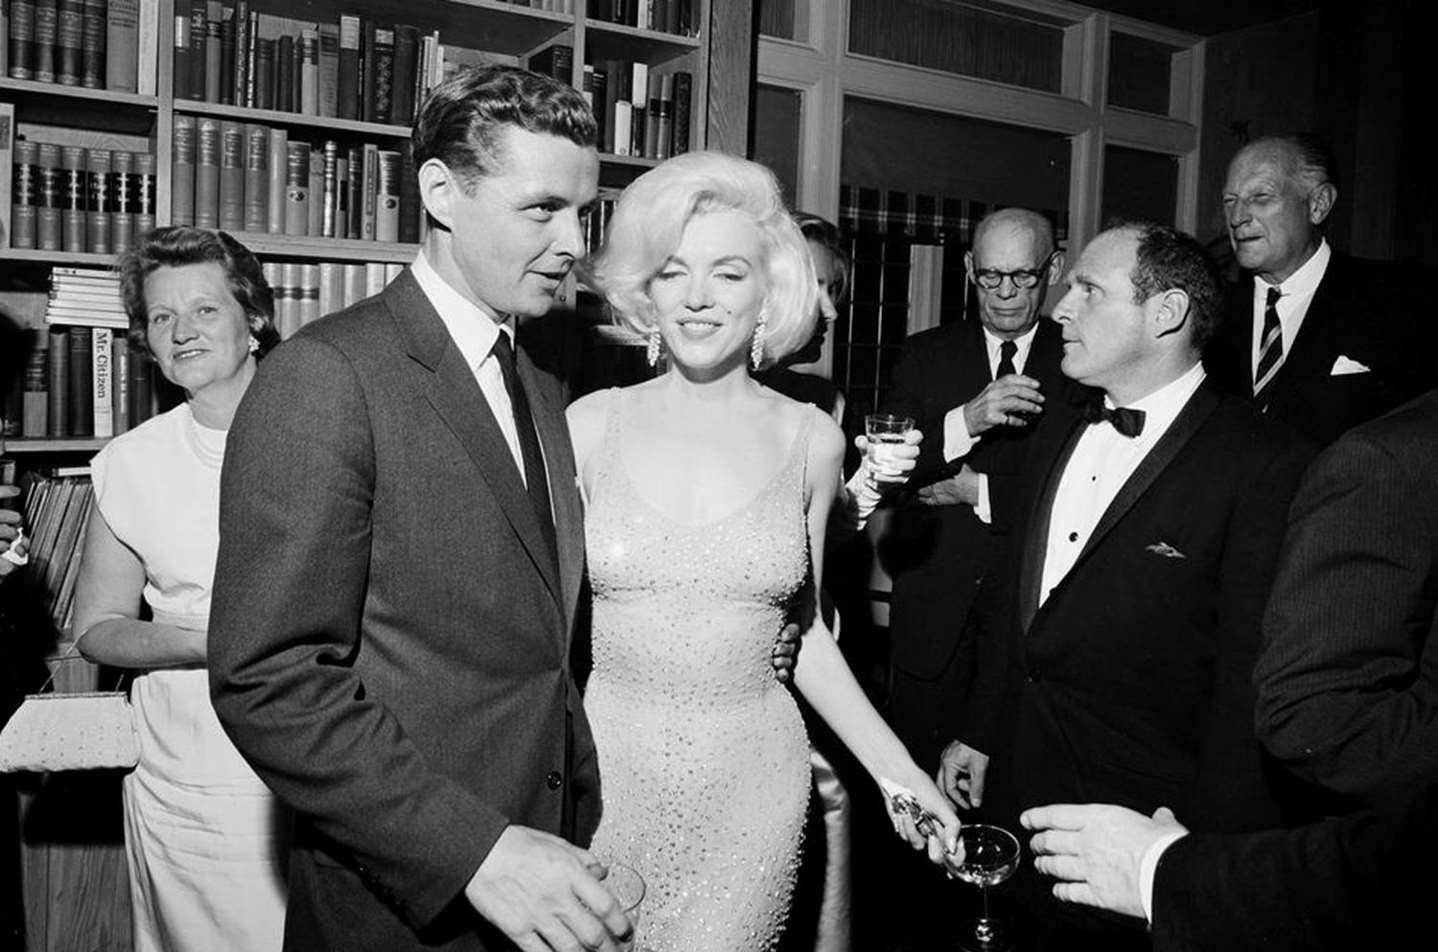 原创1962年玛丽莲梦露和美国总统肯尼迪秘密约会被偷拍的幕后故事